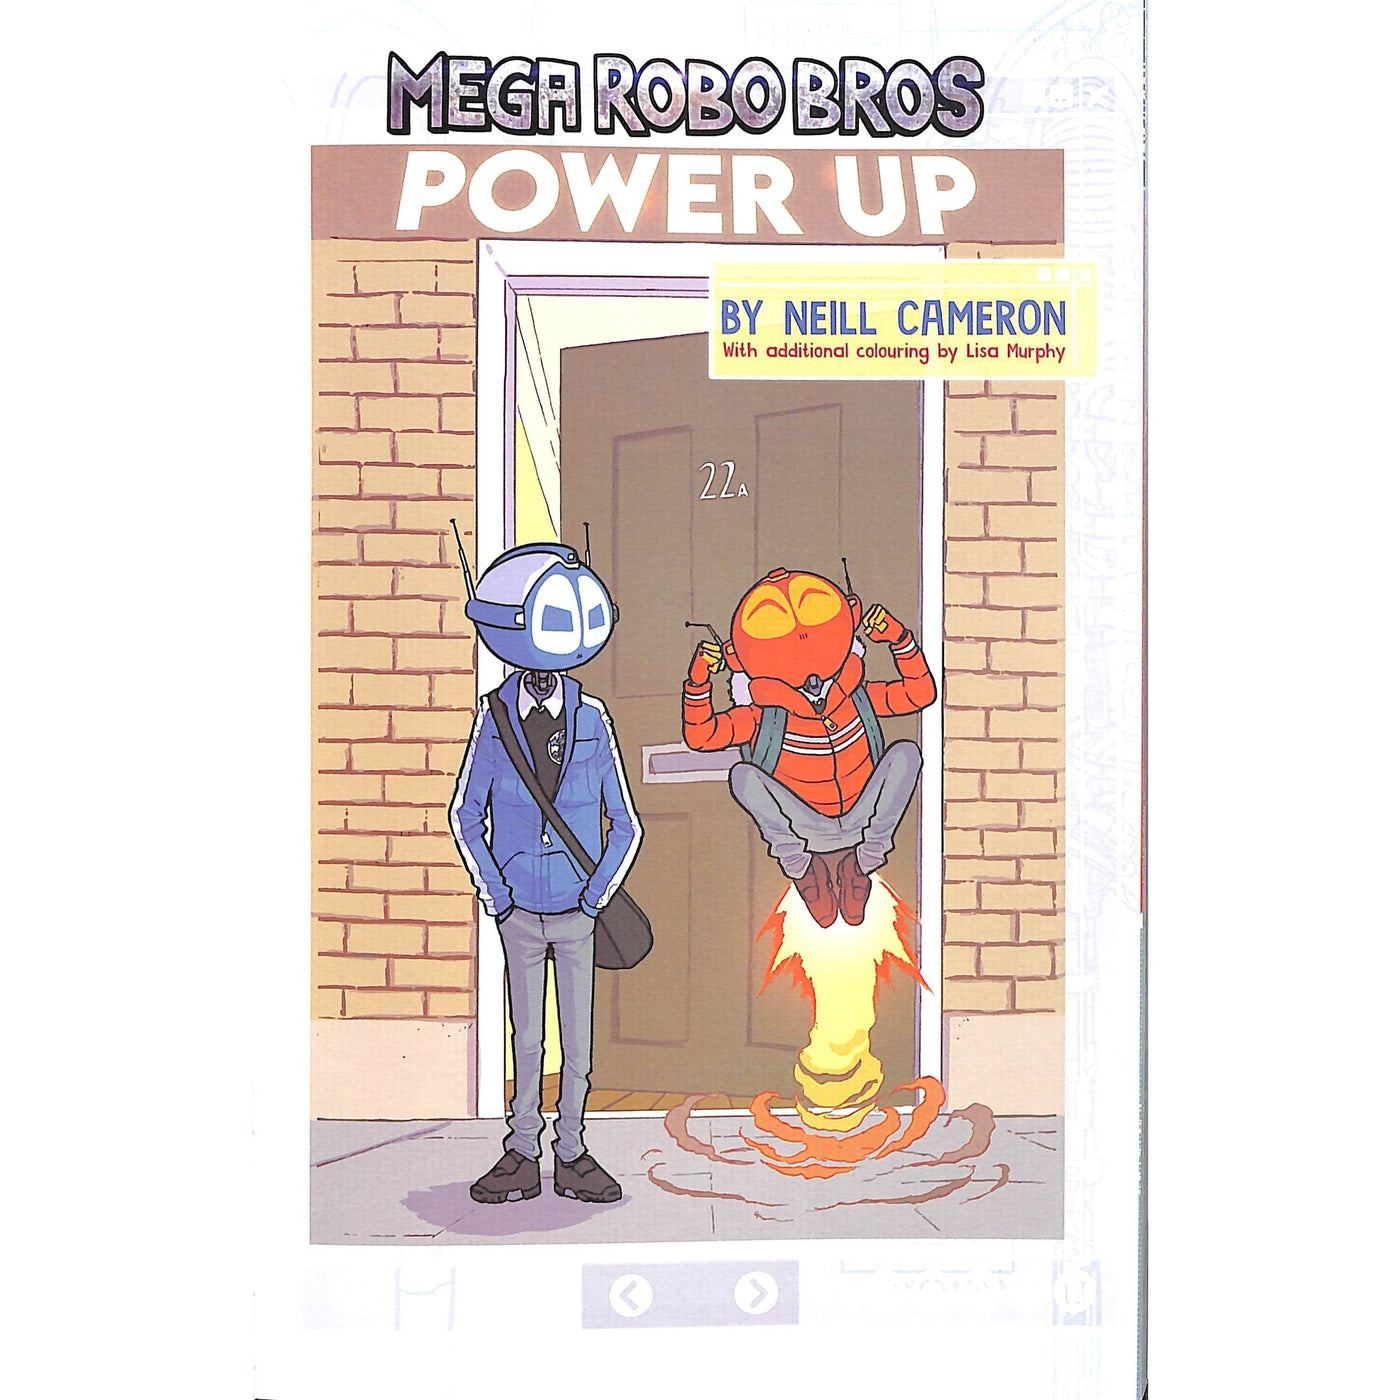 Mega Robo Bros 1: Power Up